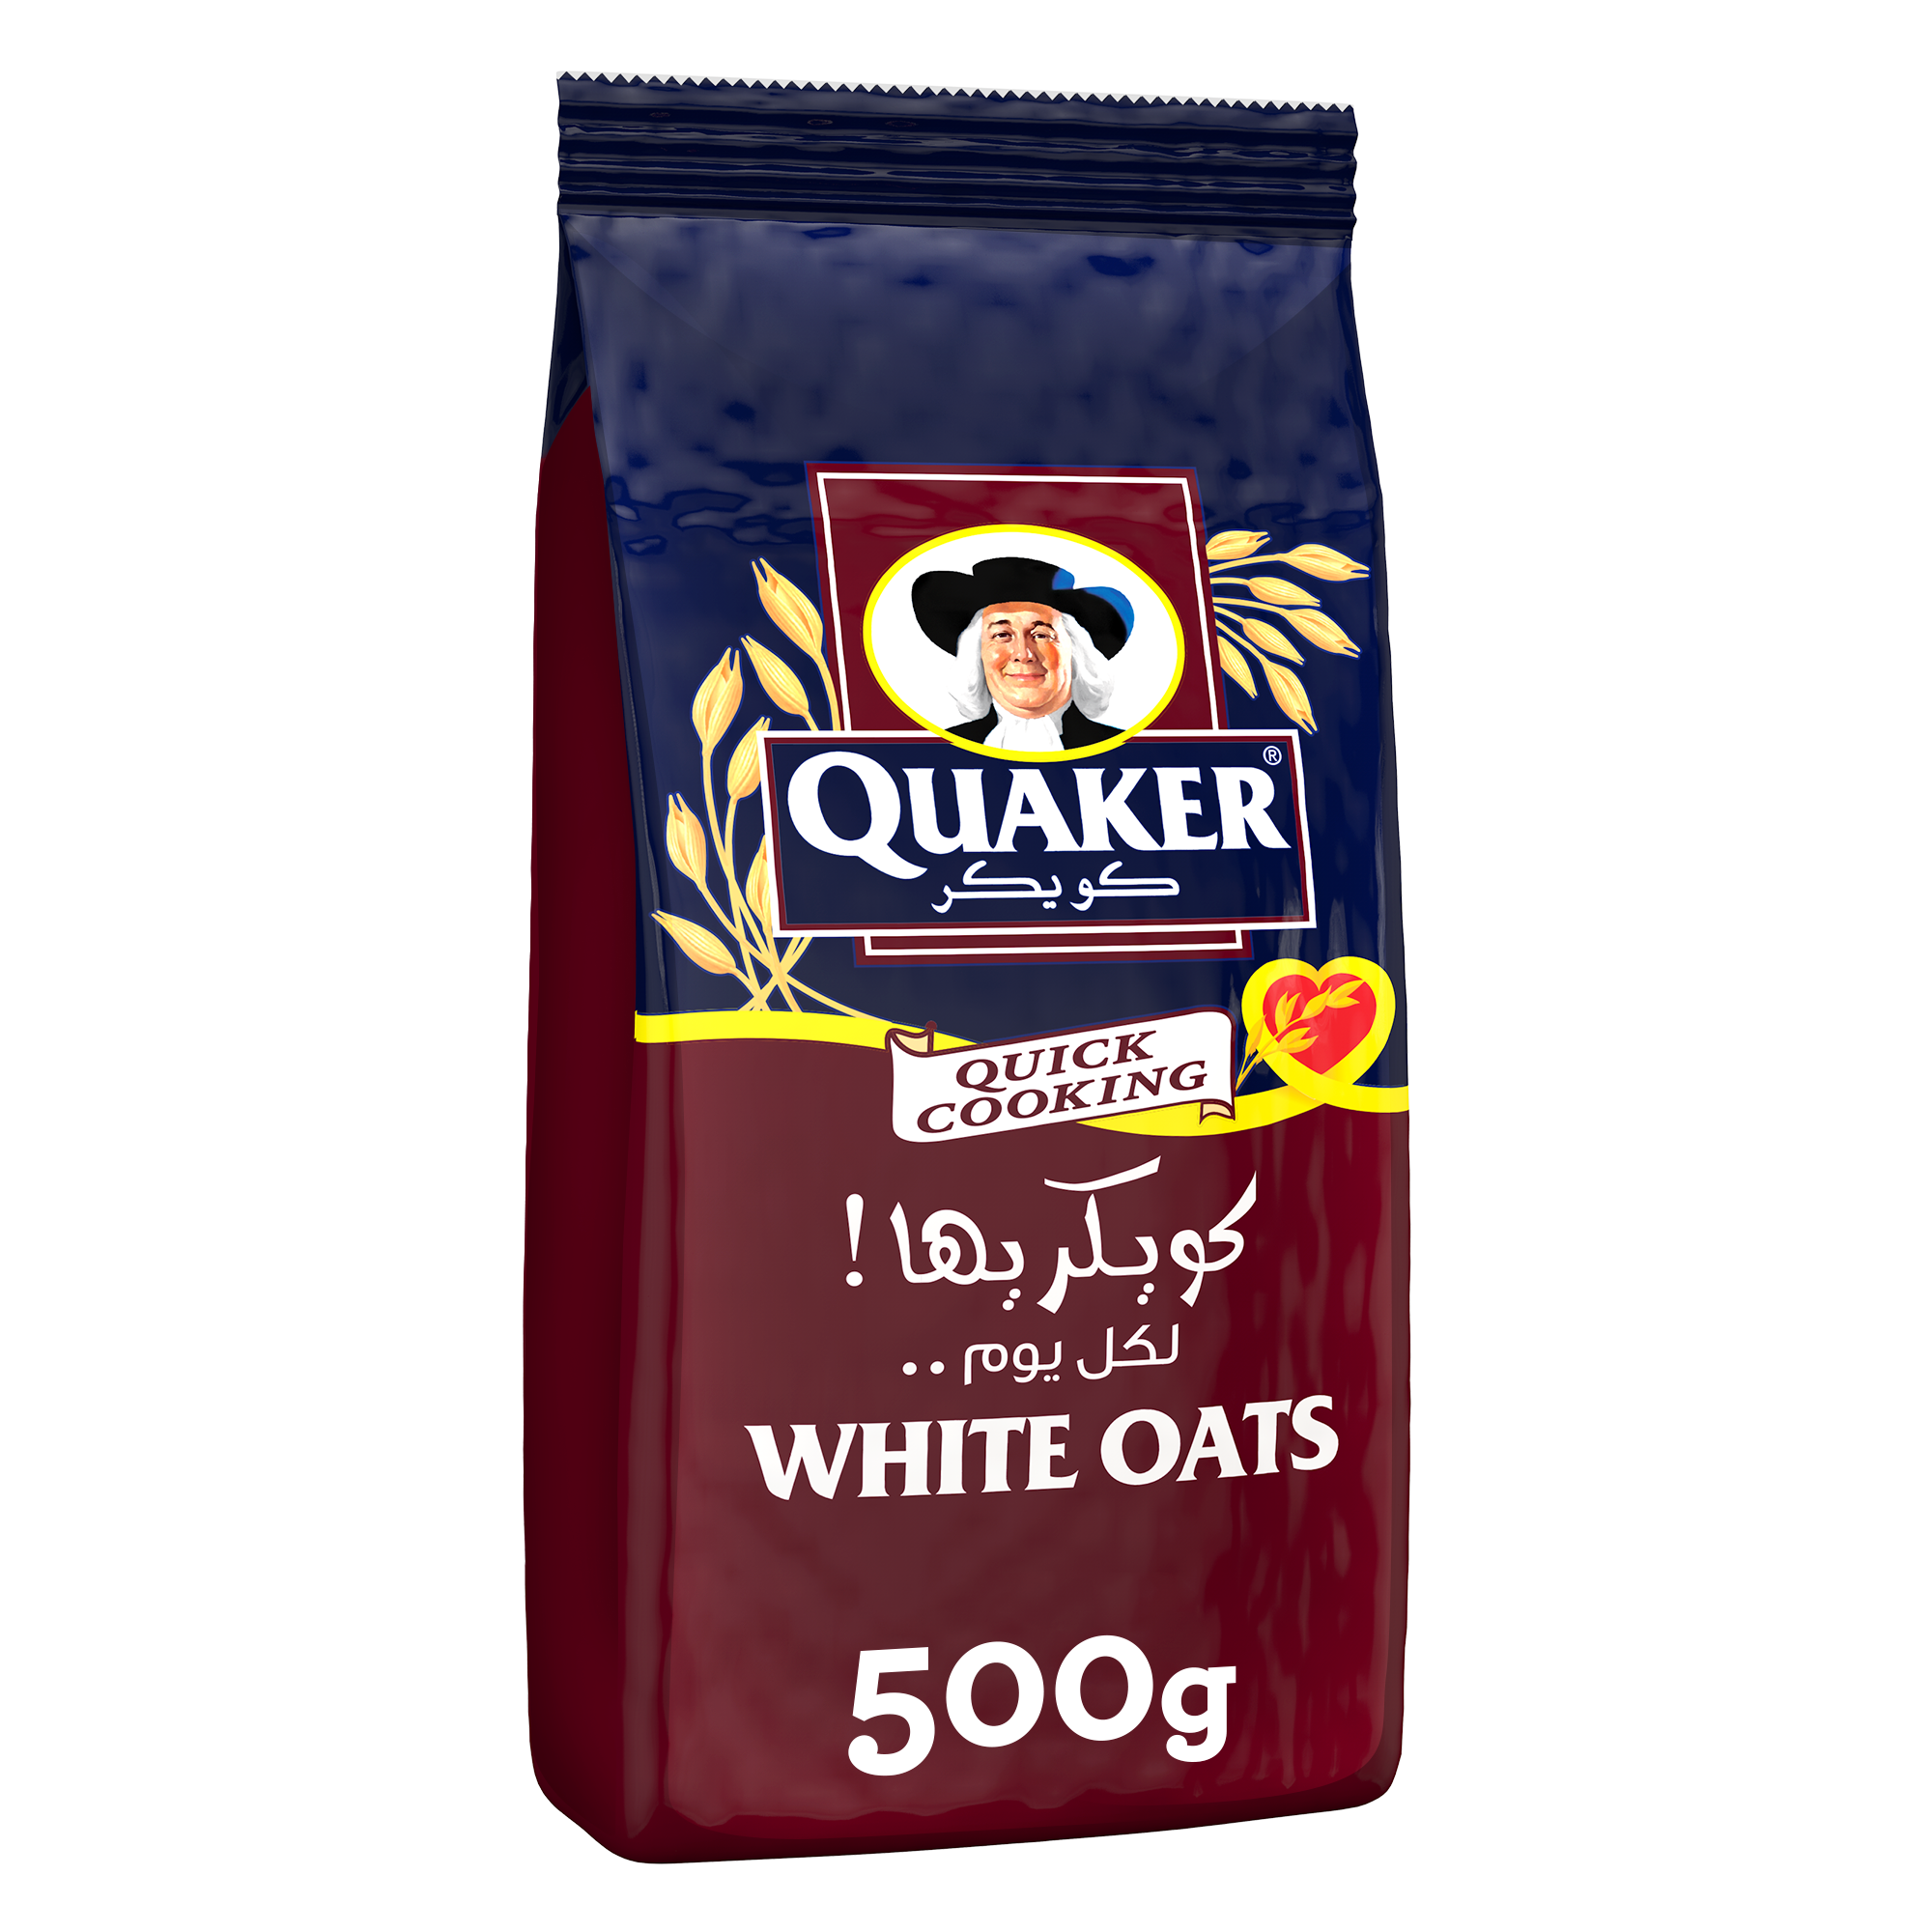 Quaker White Oats Pouch 500g